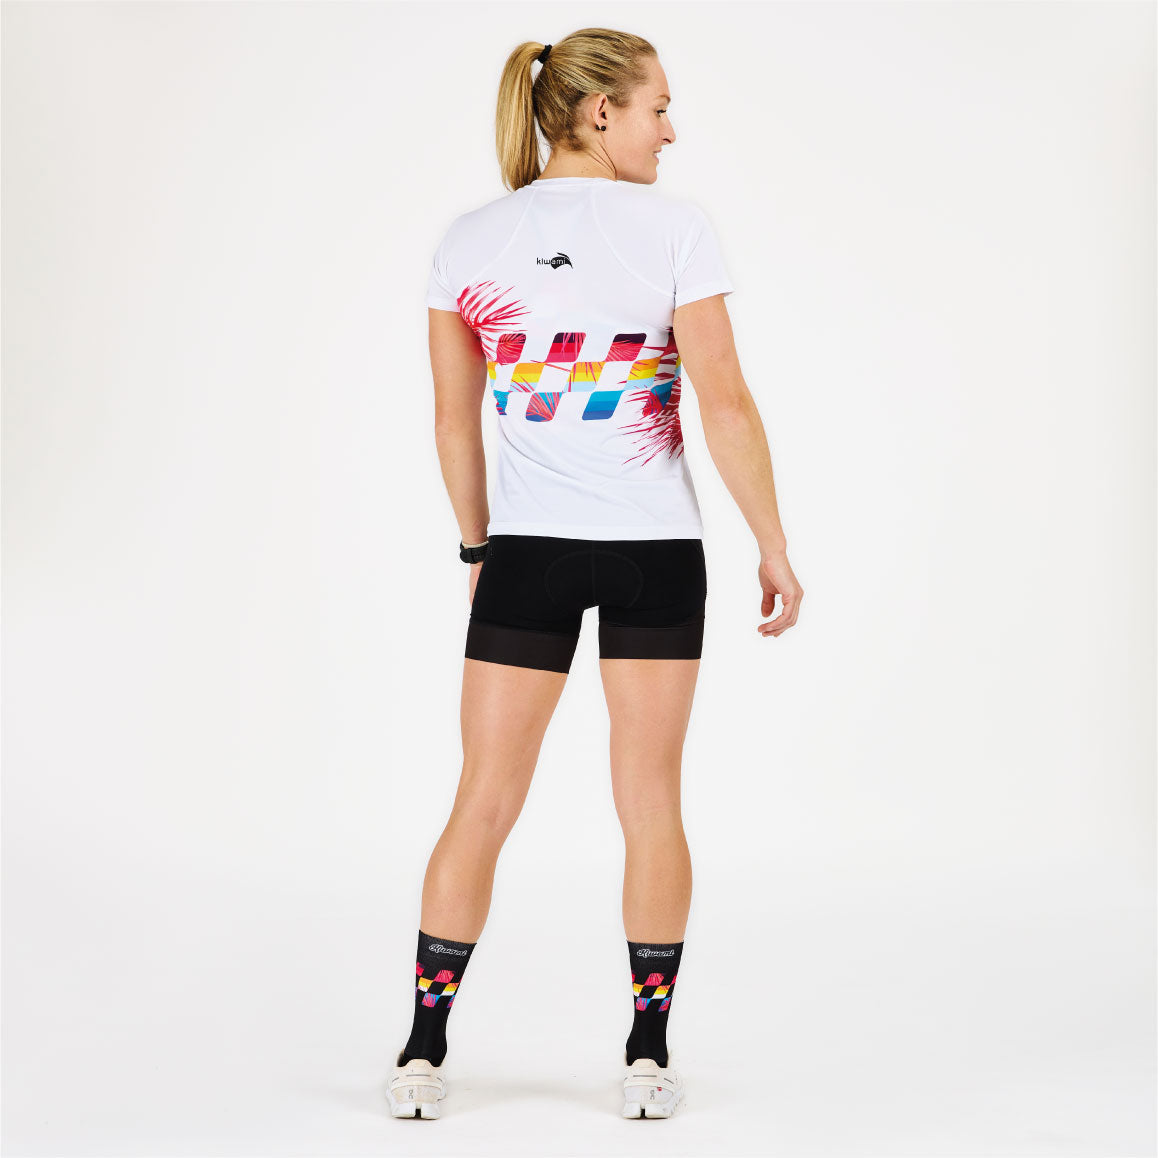 Running Shirt - Monde coloré coureur' T-shirt sport Femme